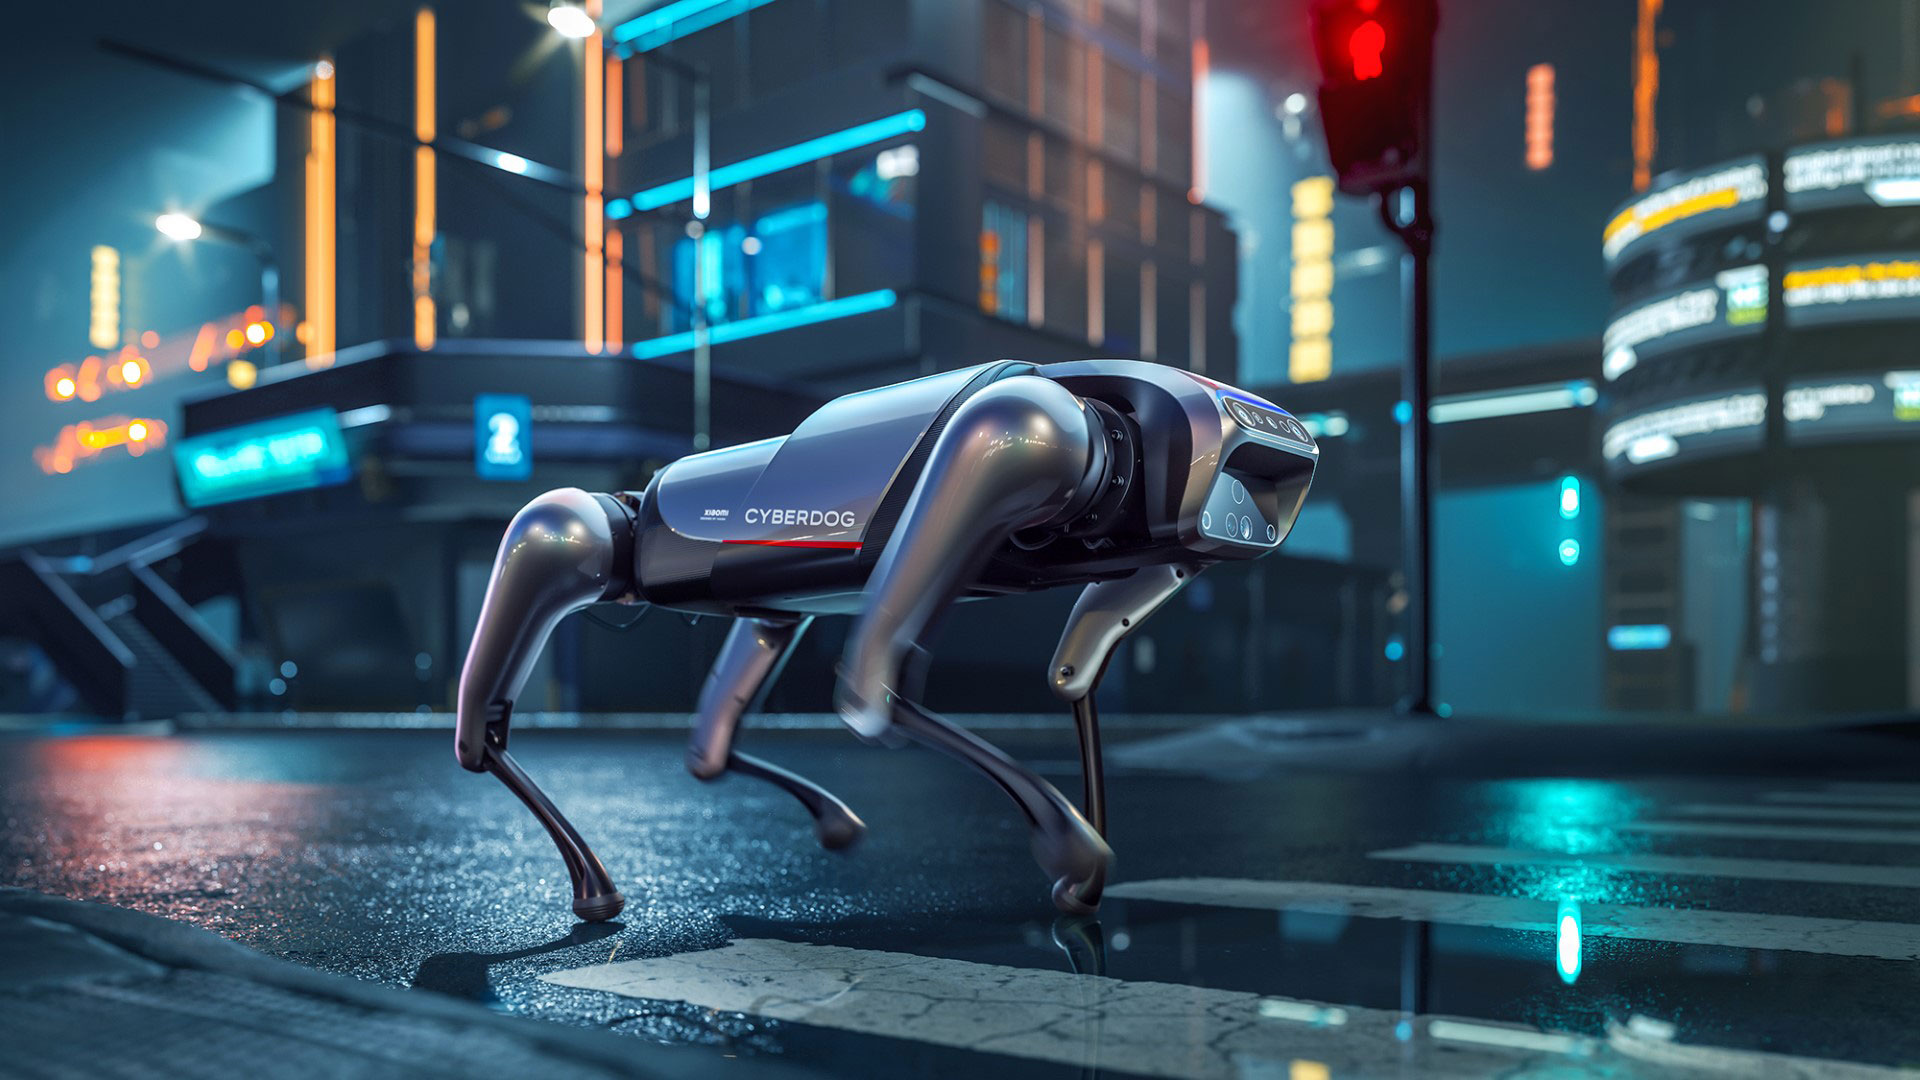 سگ رباتیک شیائومی CyberDog رسما معرفی شد